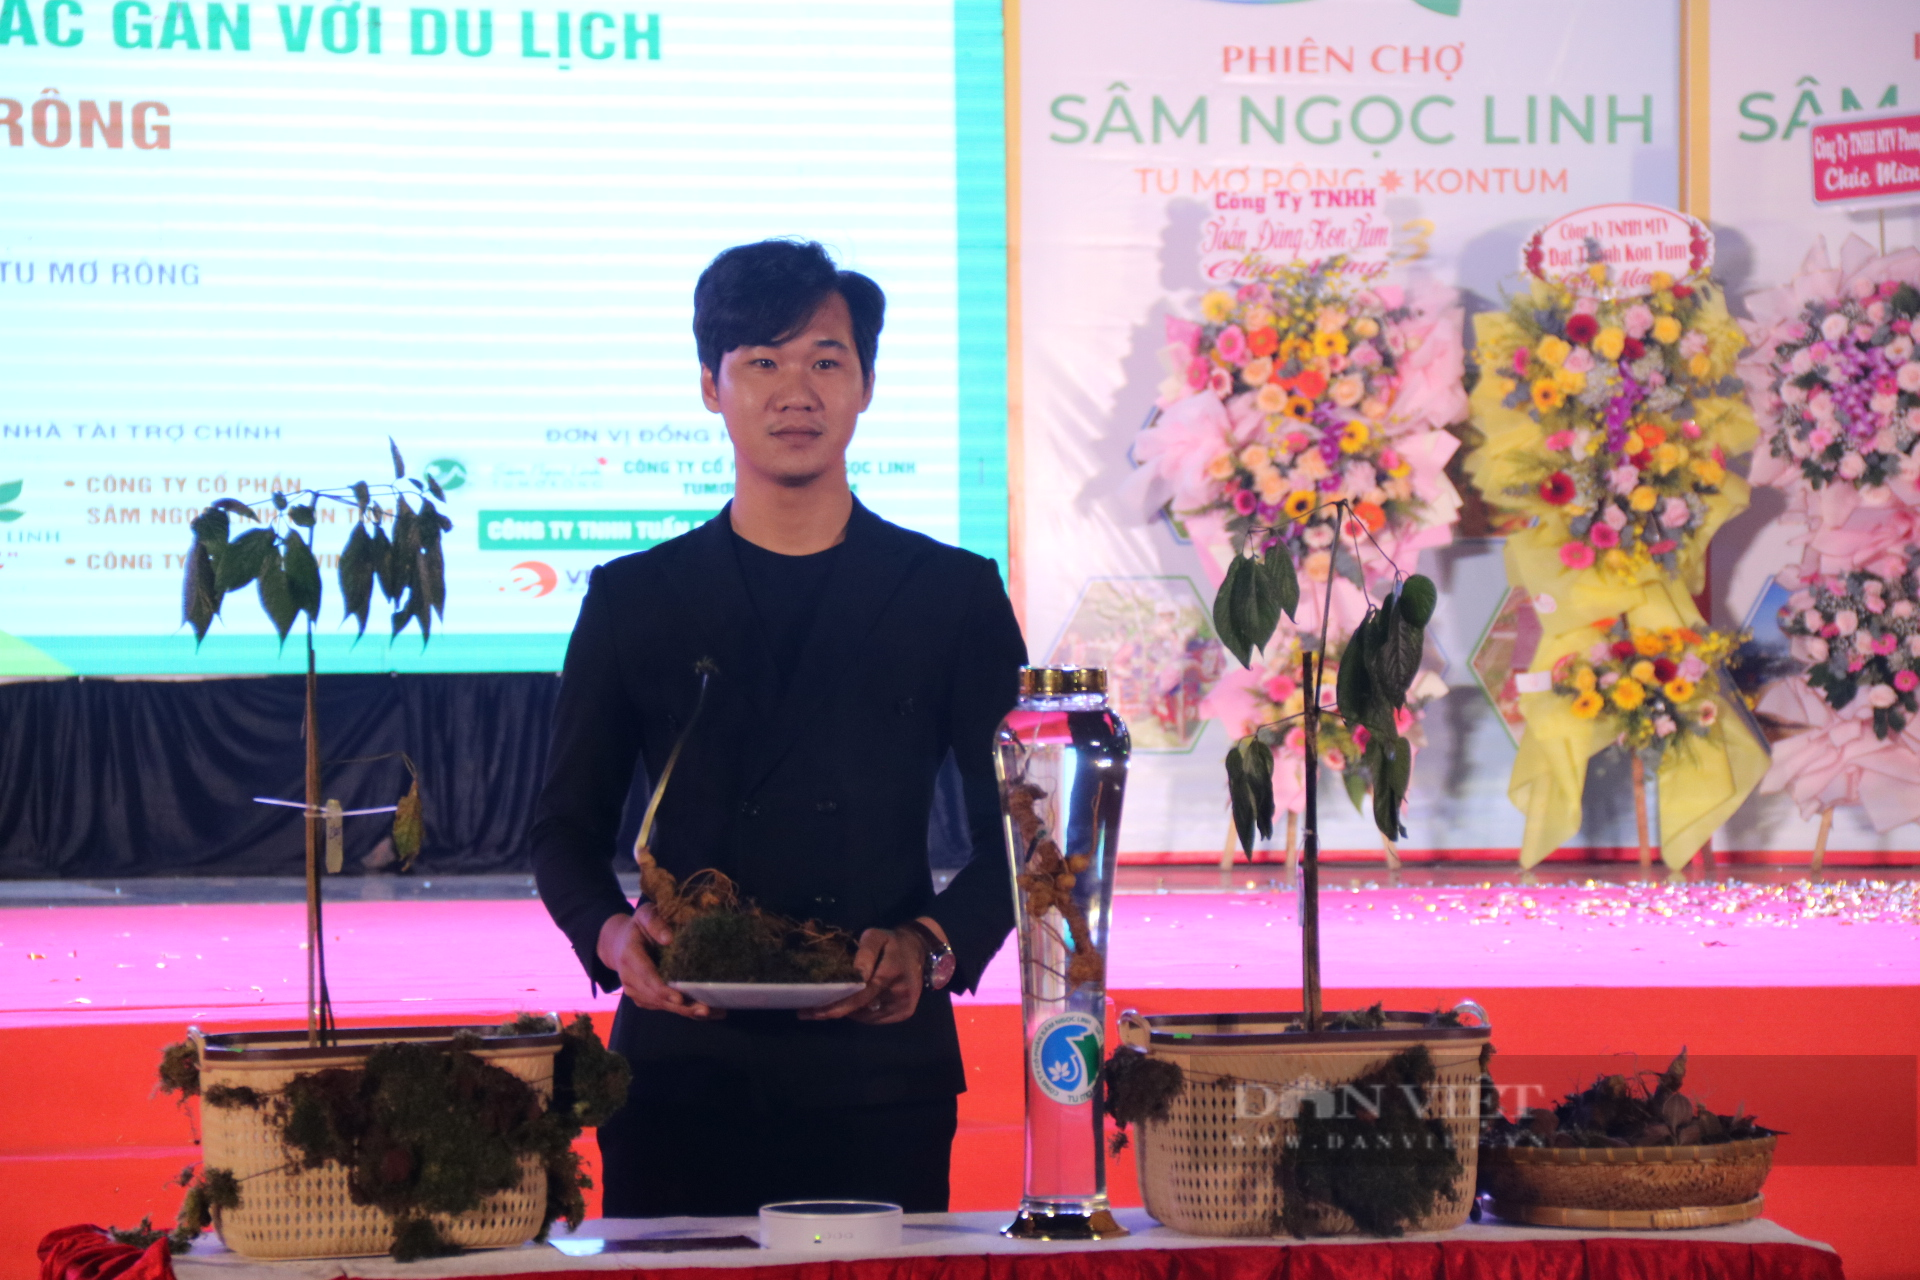 Củ sâm Ngọc Linh hơn 20 năm tuổi Kon Tum bán với giá 250 triệu đồng - Ảnh 4.